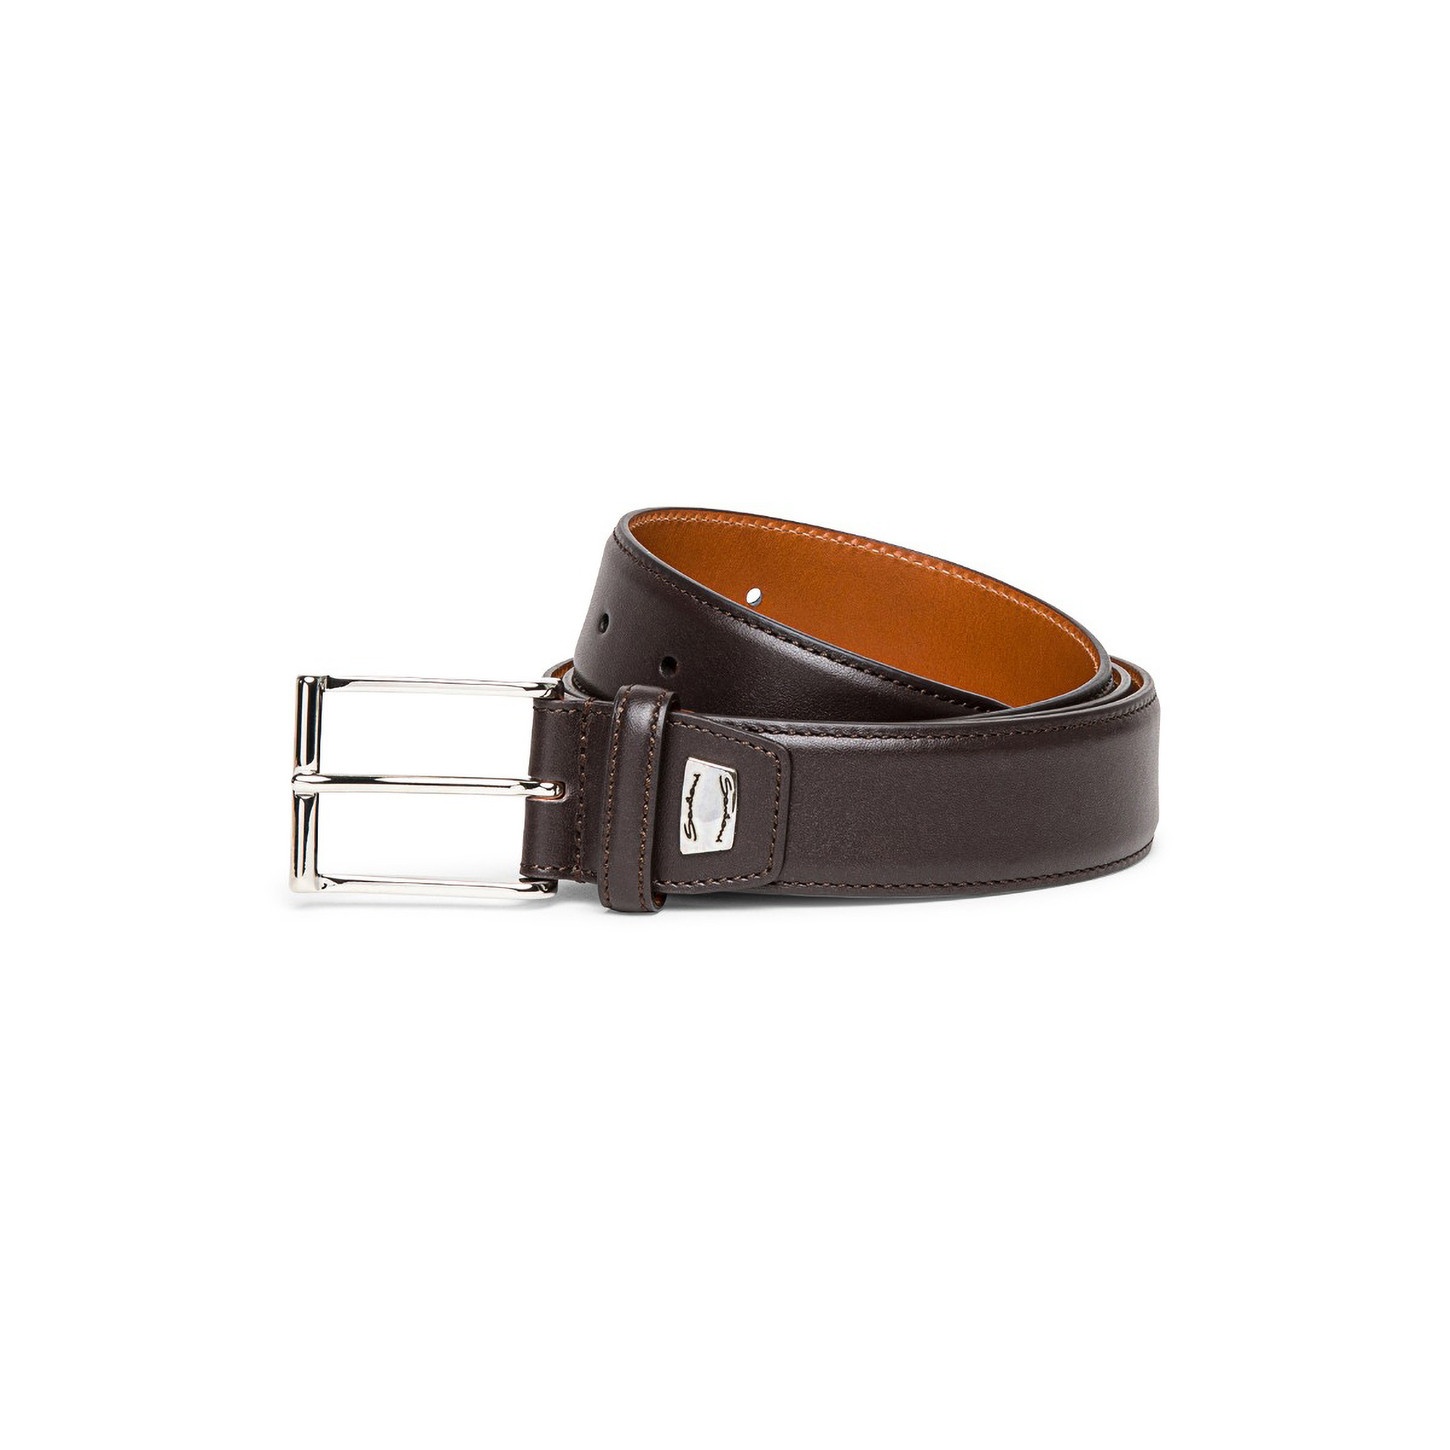 Men's brown leather adjustable belt - 1